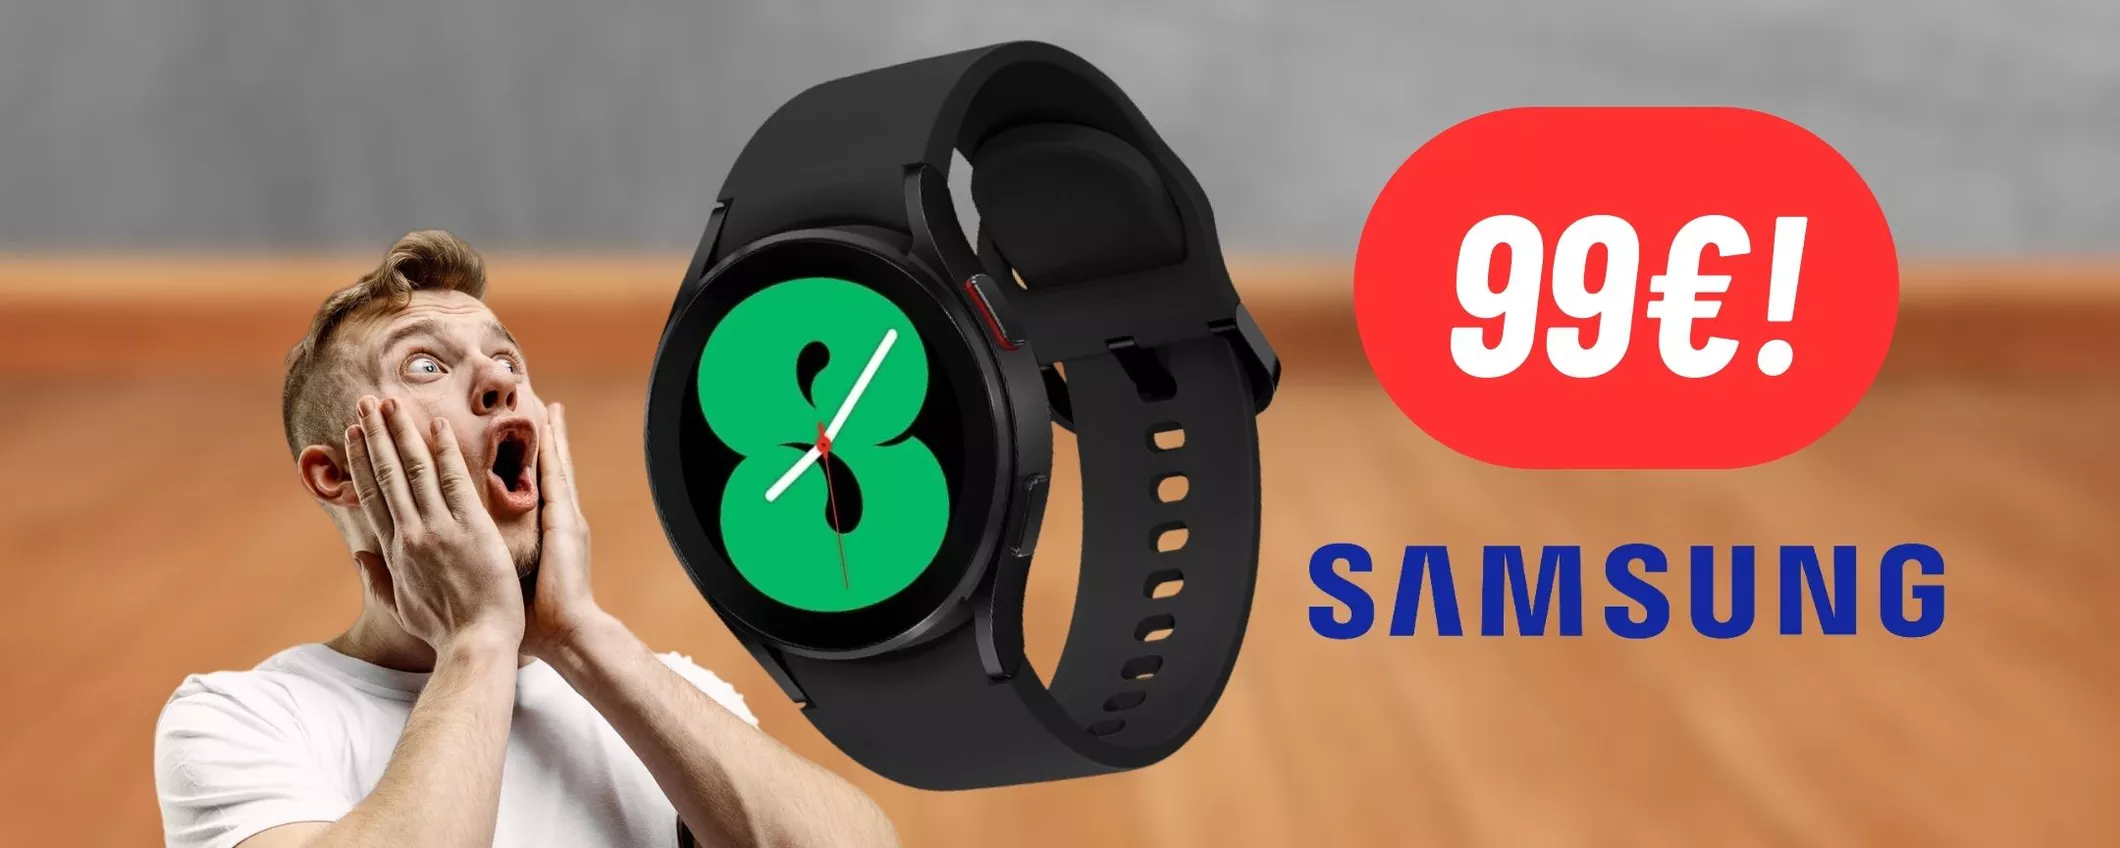 Samsung Galaxy Watch4: questo smartwatch eccellente con monitoraggio social e salute a soli 99€